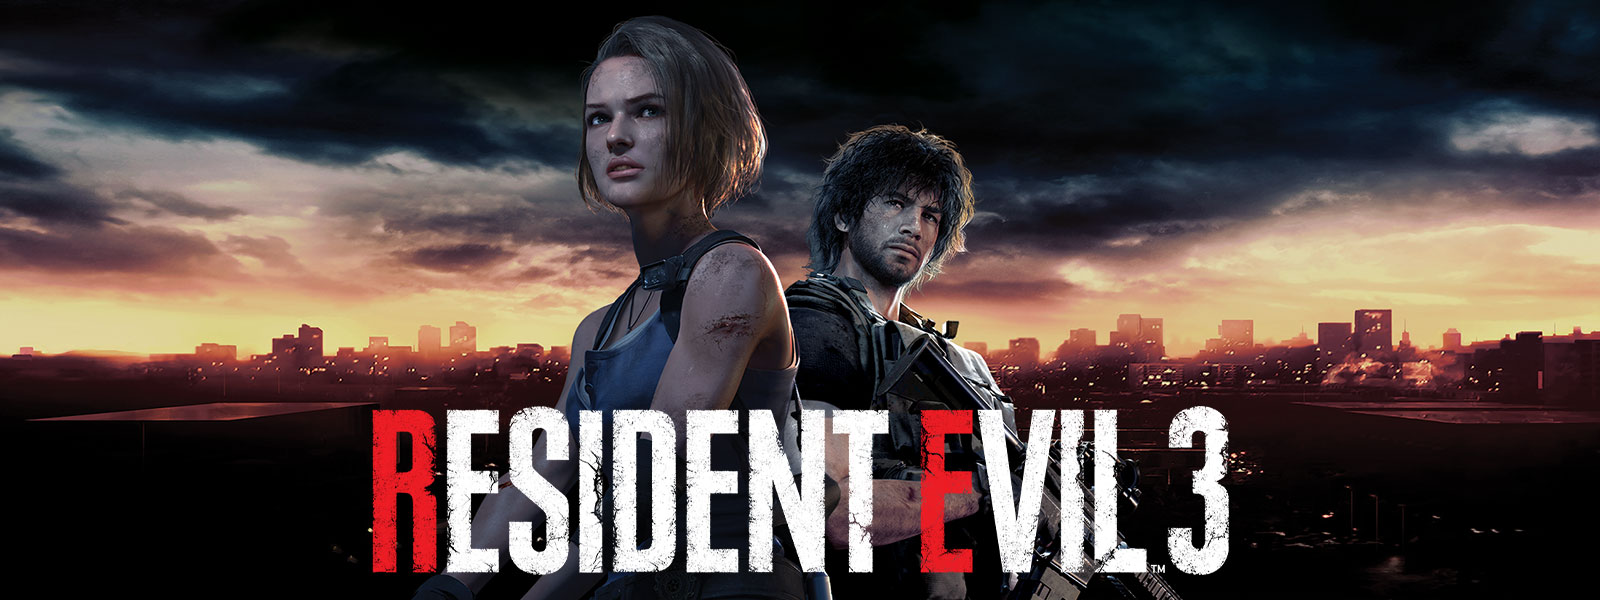 Resident Evil 3, Jill Valentine y Carlos Oliveira, de pie, con el horizonte de Raccoon City detrás de ellos